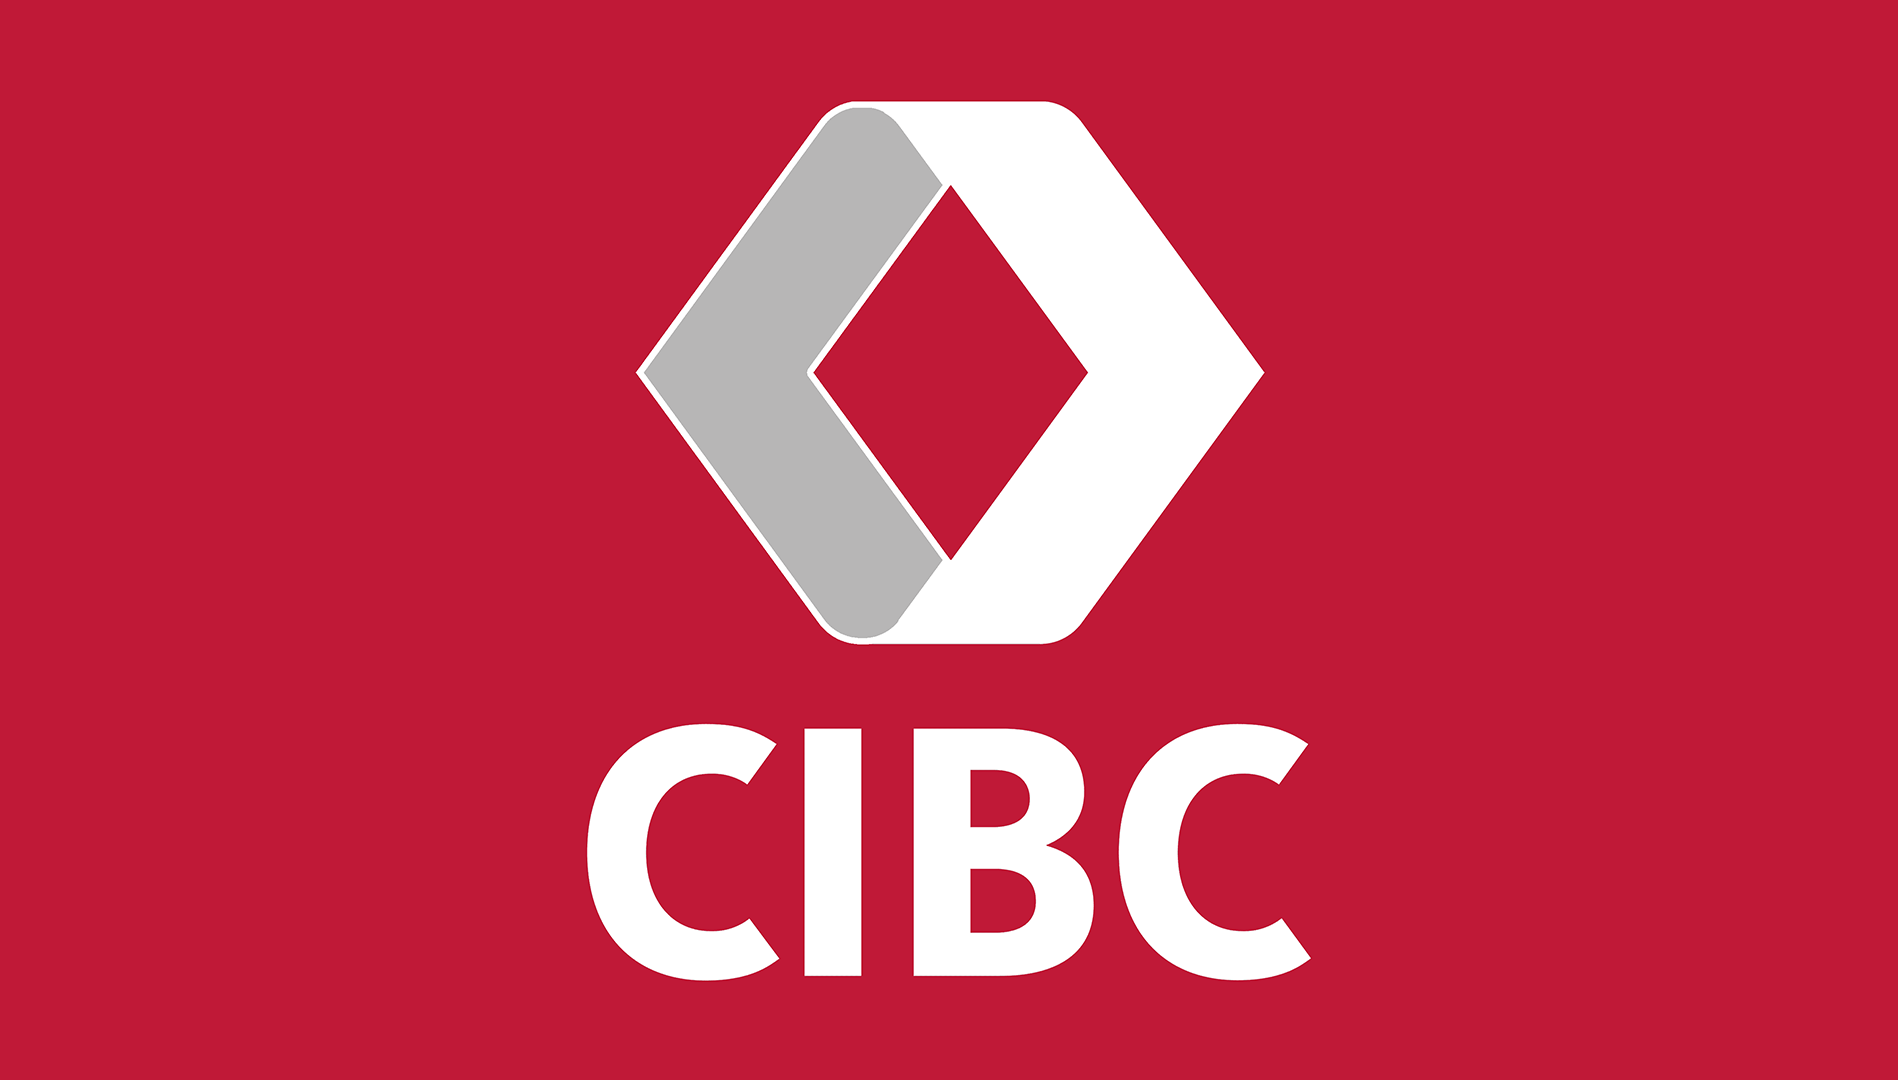 CIBC Capital Markets